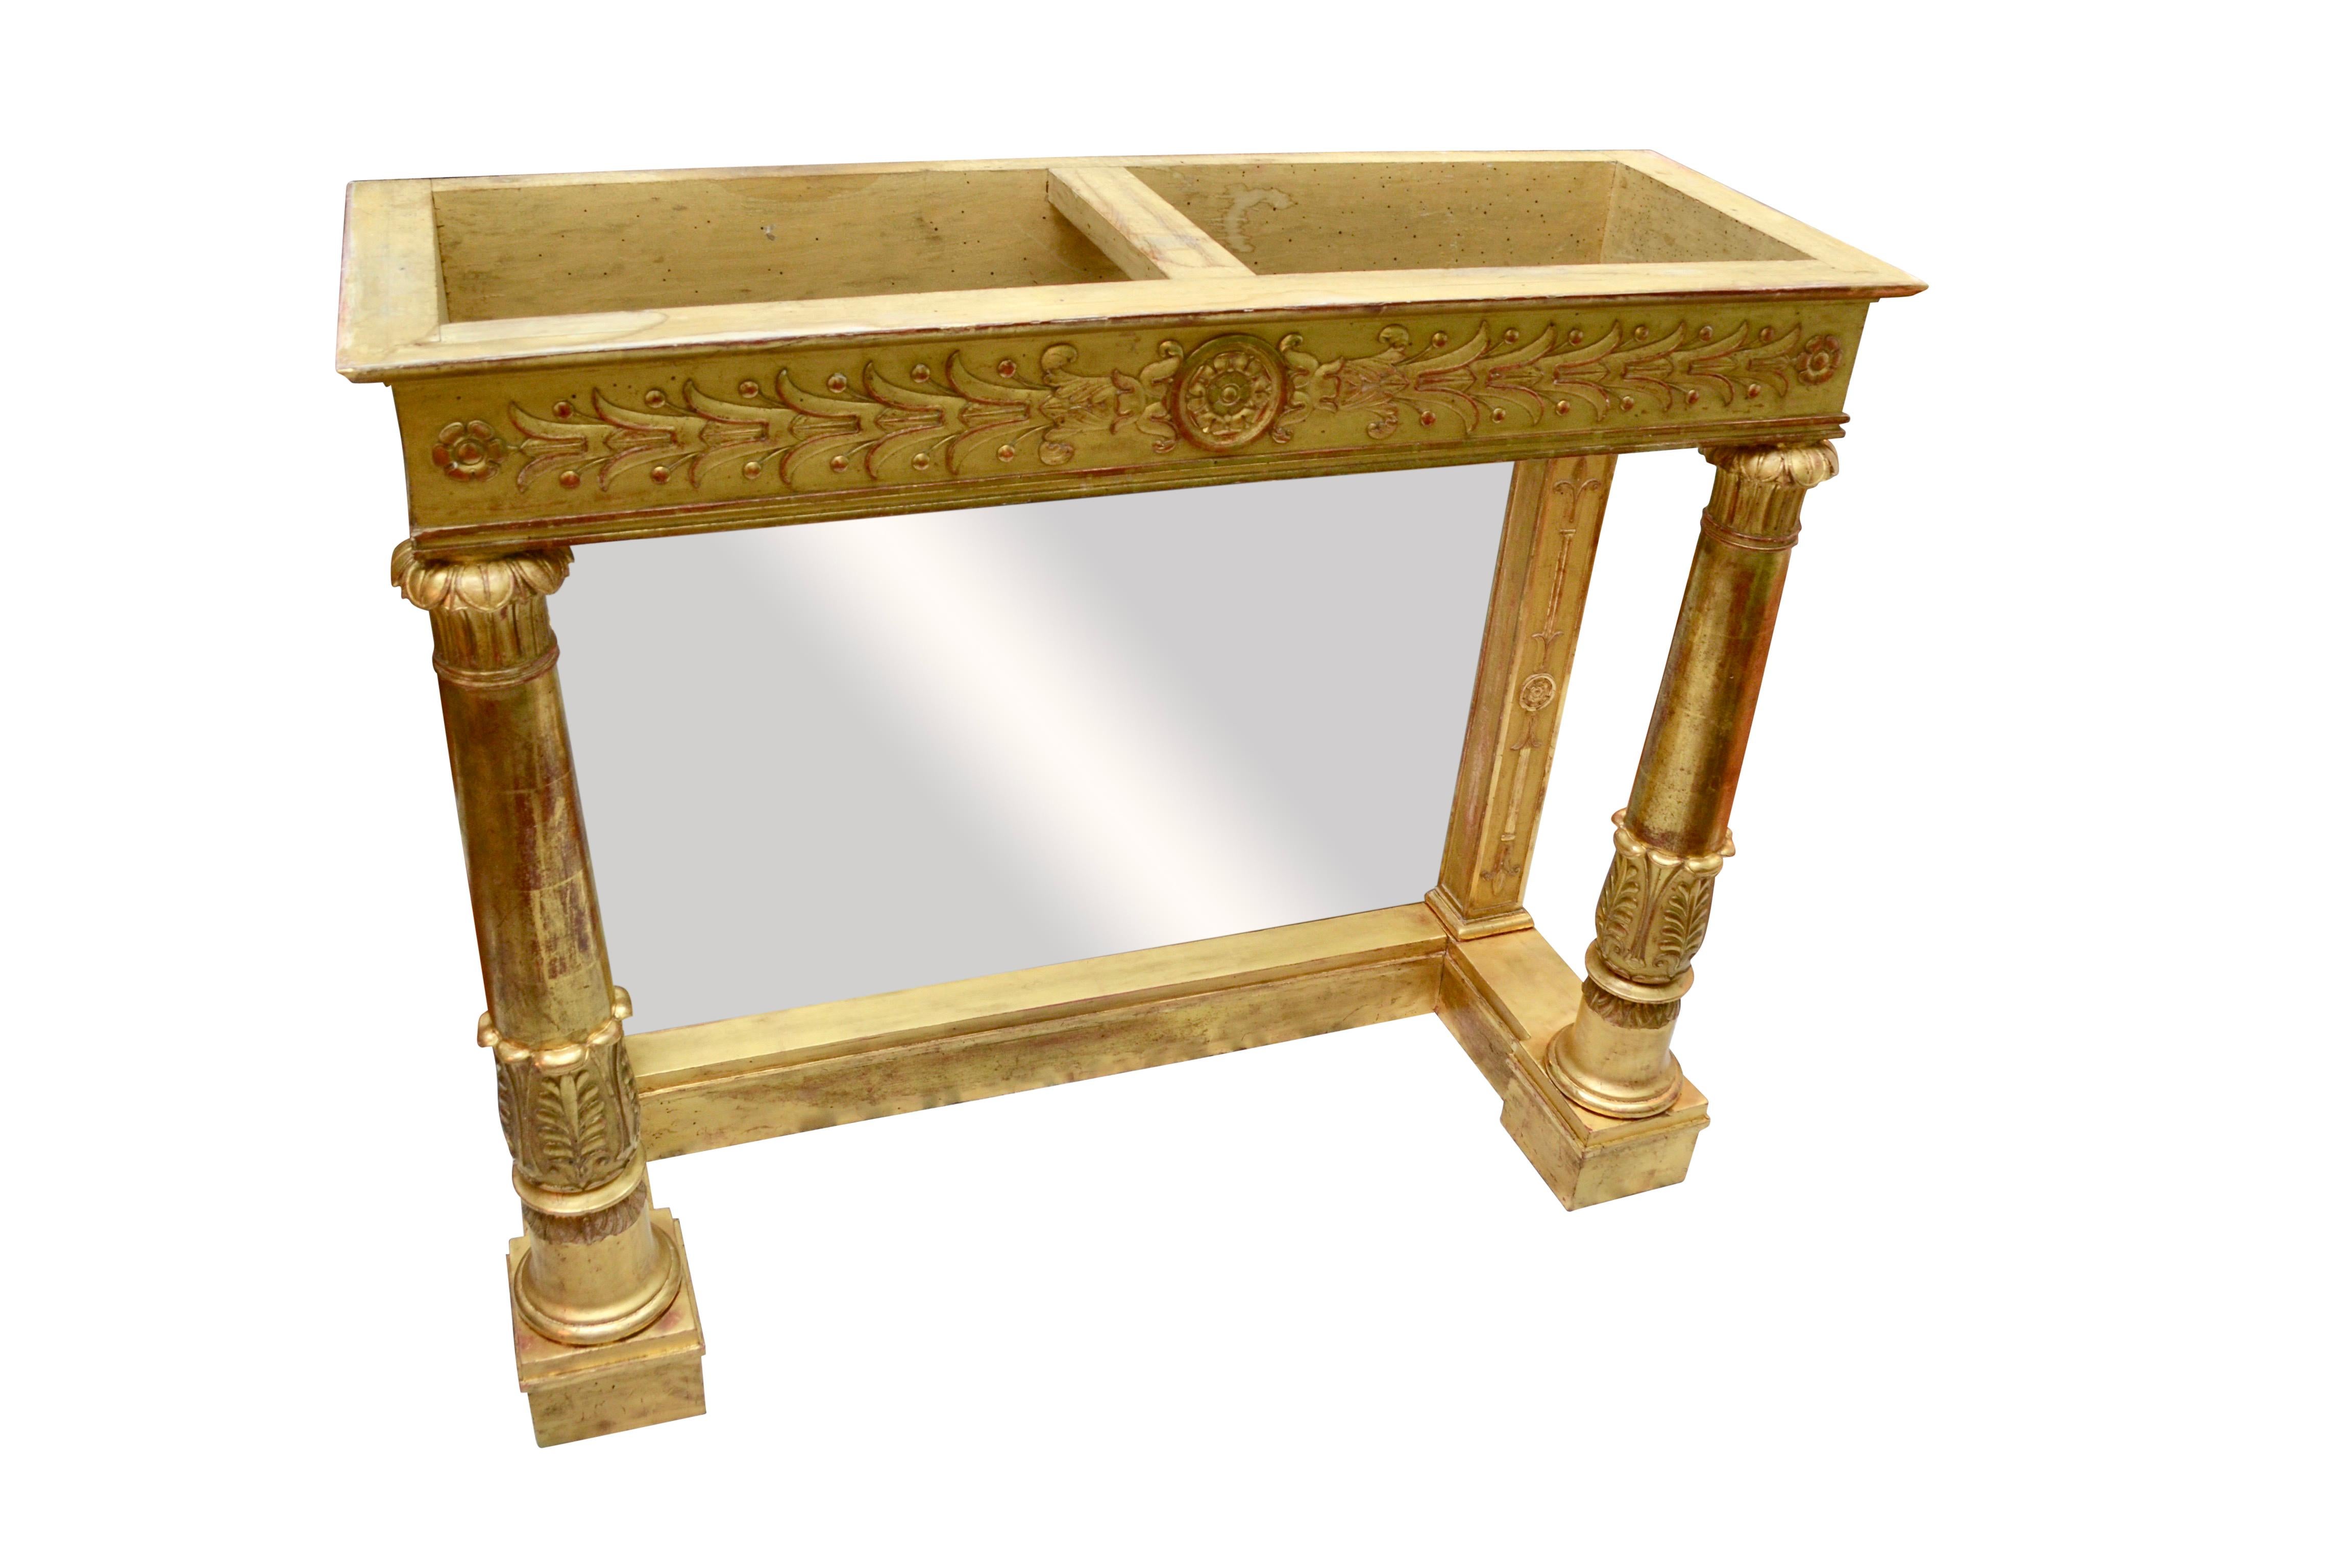 Console d'époque Empire française en bois de hêtre doré, avec un plateau en marbre blanc et un fond en miroir. La console a deux pieds tournés à l'avant avec une décoration sculptée en haut et en bas. La frise est décorée d'une rosette centrale